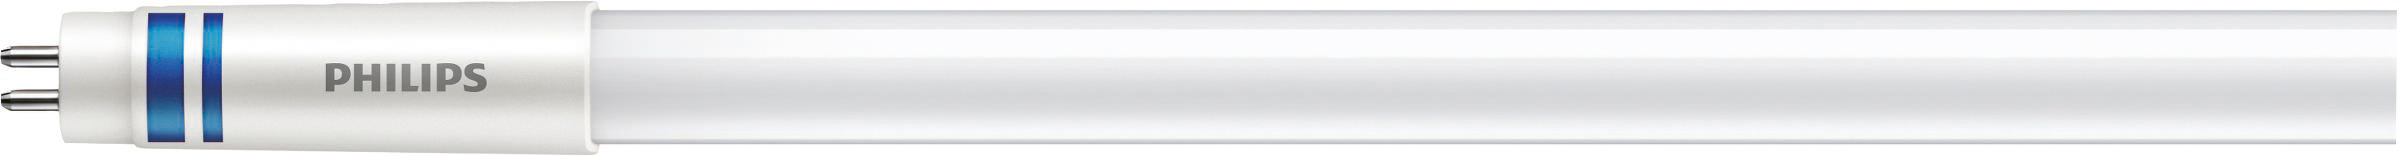 Philips Lighting LED-Tube T5 f. EVG G5, 830, 1149mm MAS LEDtube#74951400 günstig online kaufen